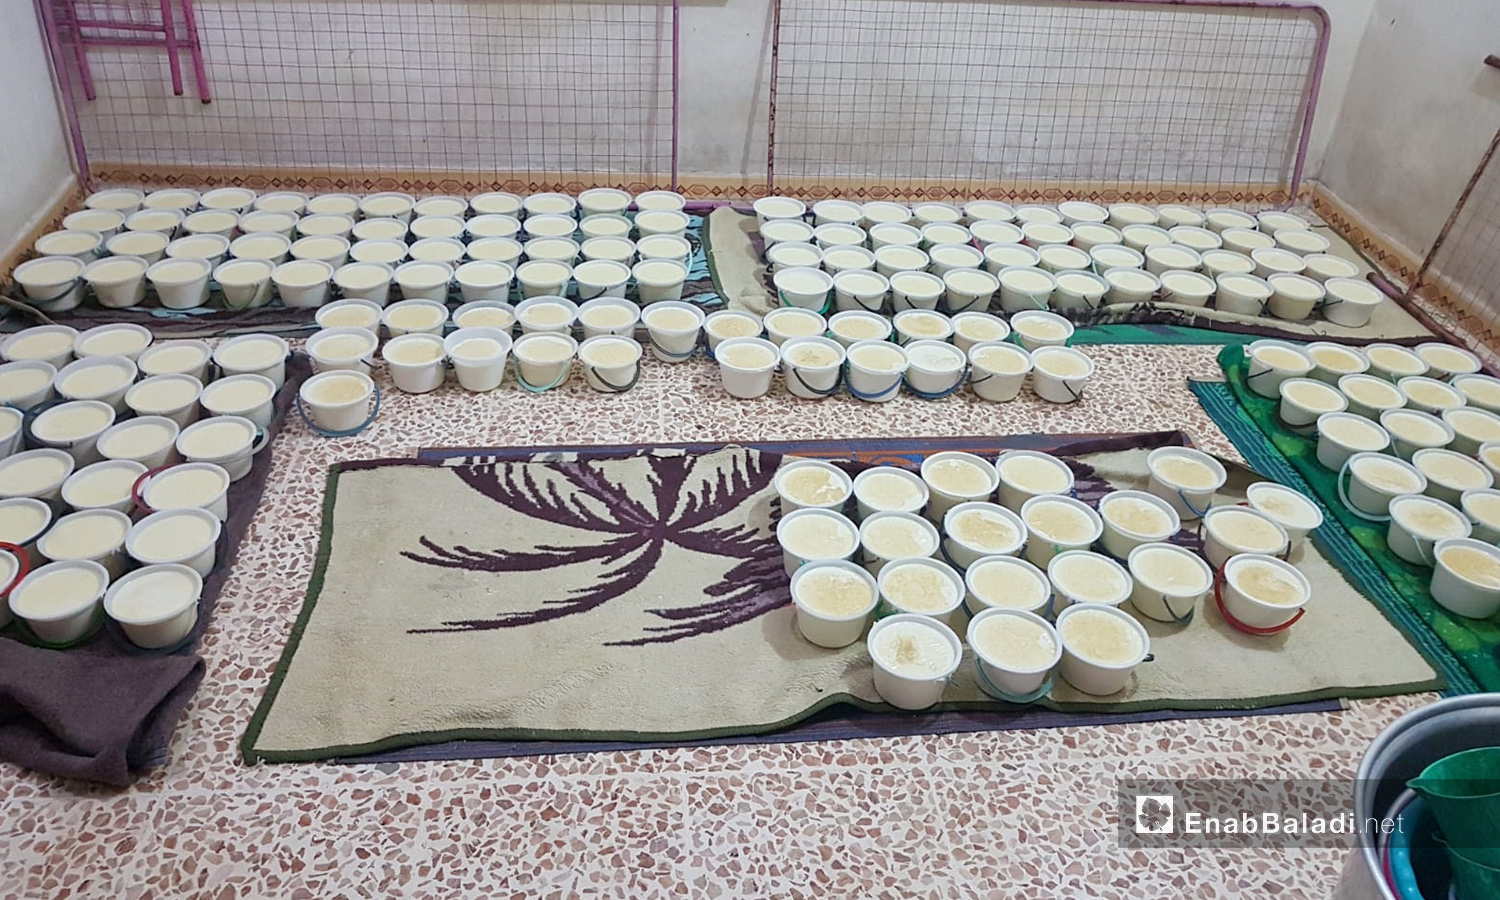 سكب اللبن داخل الأواني للتخثر في مراحل صناعة الجبنة في بلدة الدانا بريف إدلب - 4 حزيران 2020 (عنب بلدي/شادية تعتاع)